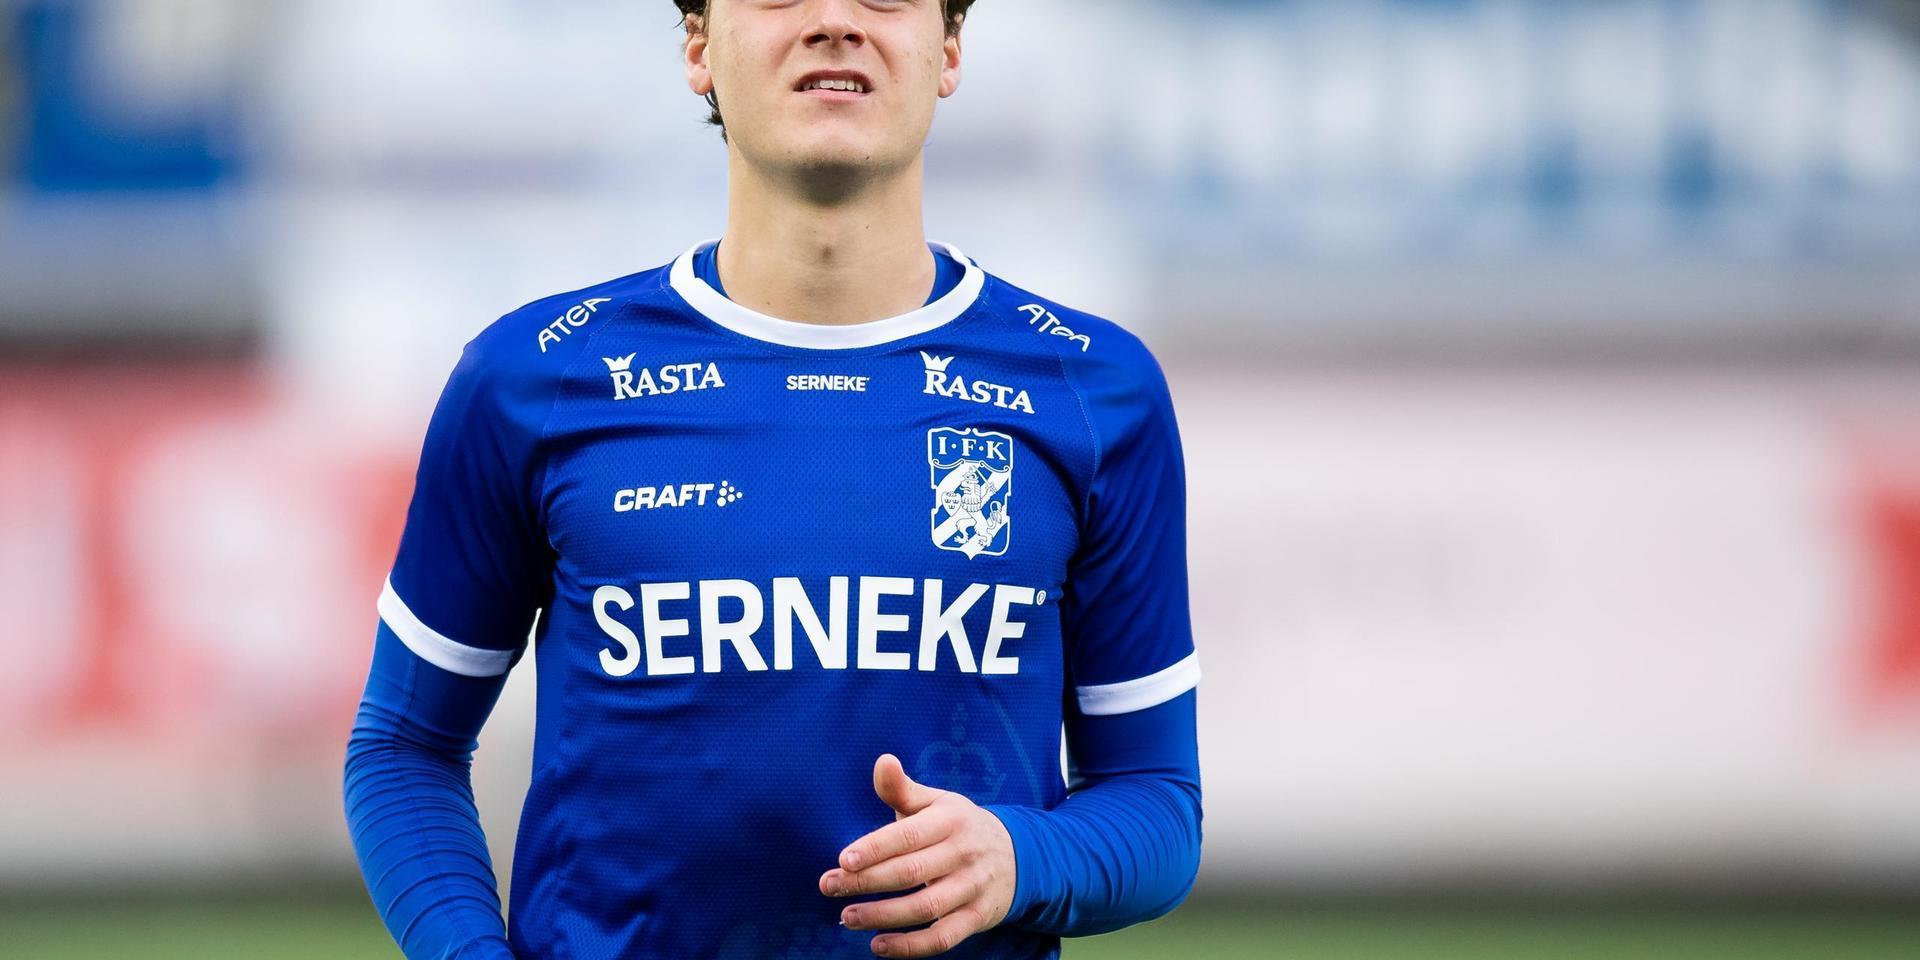 August Erlingmark innan matchen i Svenska Cupen mellan IFK Göteborg och Västerås den 22 februari 2020 i Göteborg.